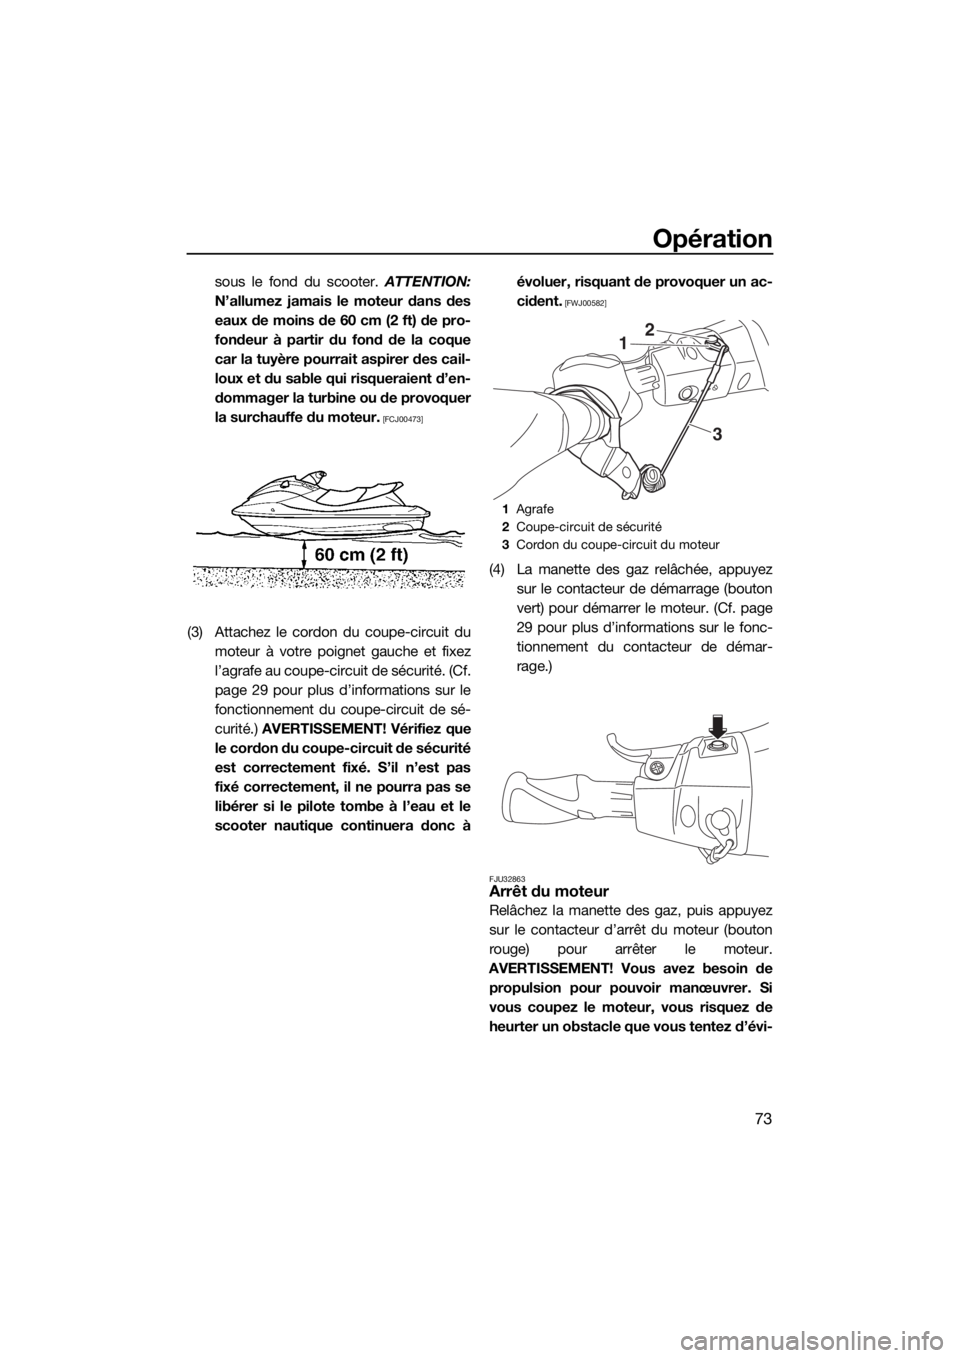 YAMAHA VX 2019  Notices Demploi (in French) Opération
73
sous le fond du scooter. ATTENTION:
N’allumez jamais le moteur dans des
eaux de moins de 60 cm (2 ft) de pro-
fondeur à partir du fond de la coque
car la tuyère pourrait aspirer des 